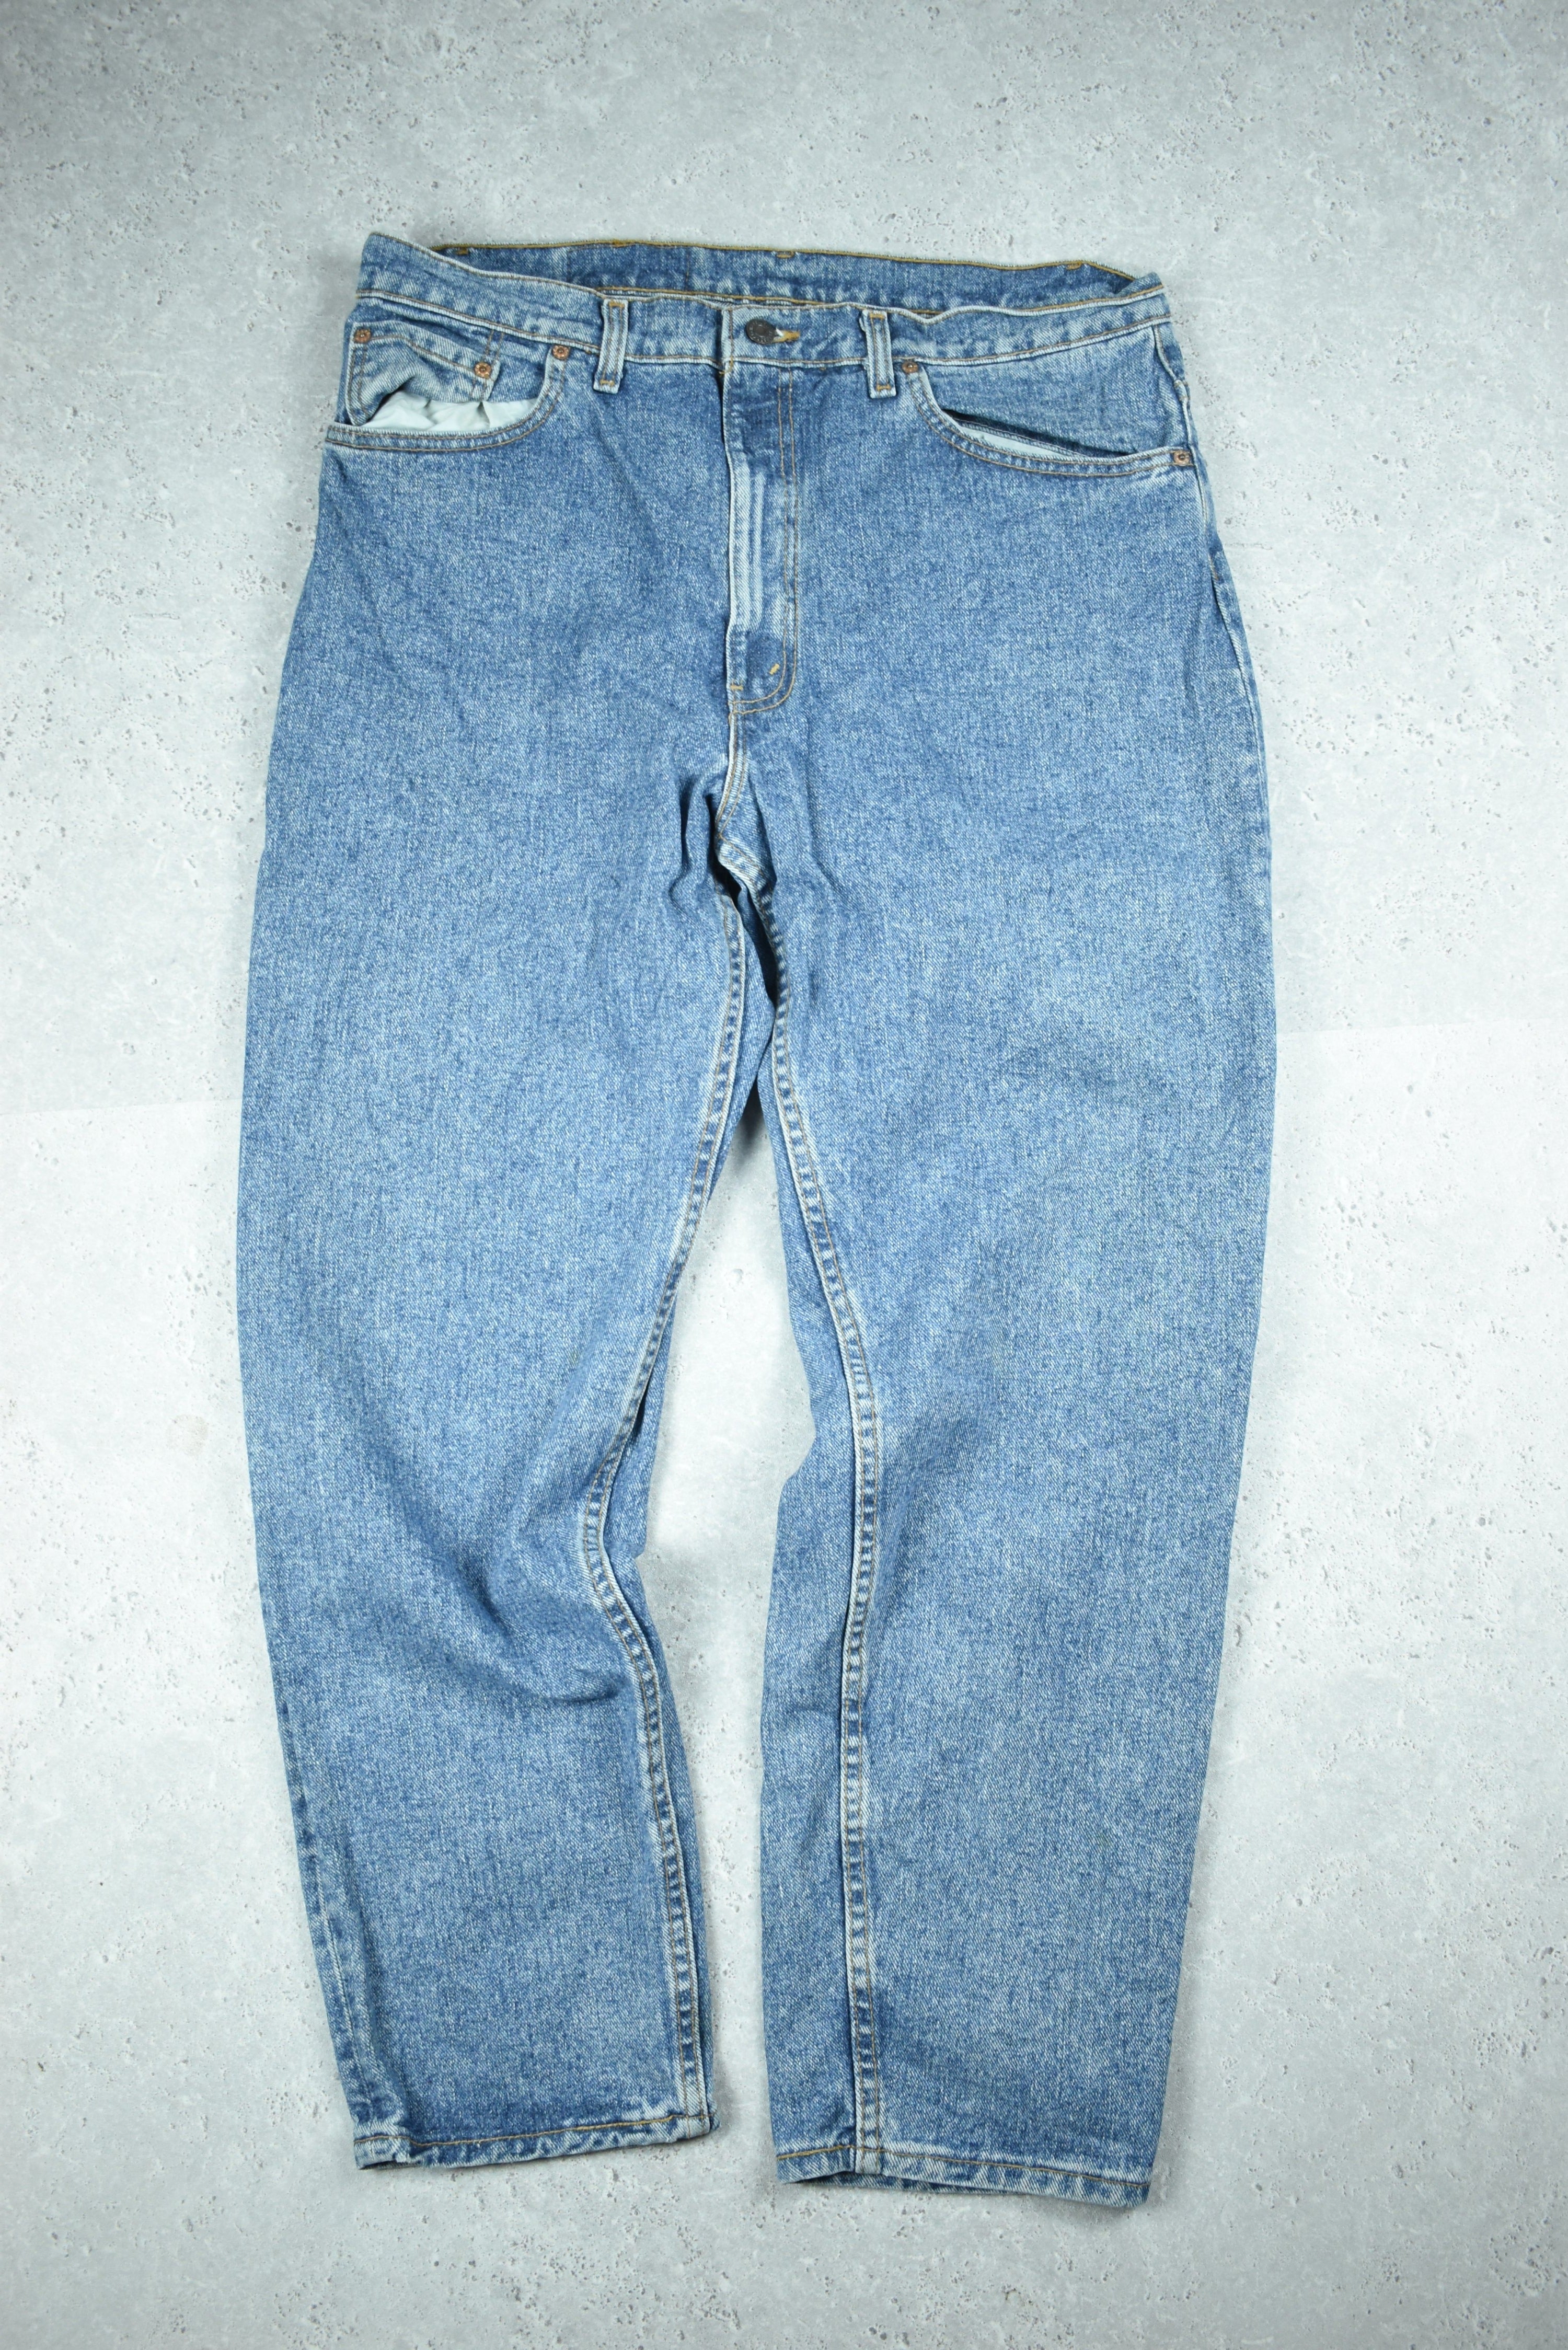 Vintage Levis 550 Denim Jeans 33x30